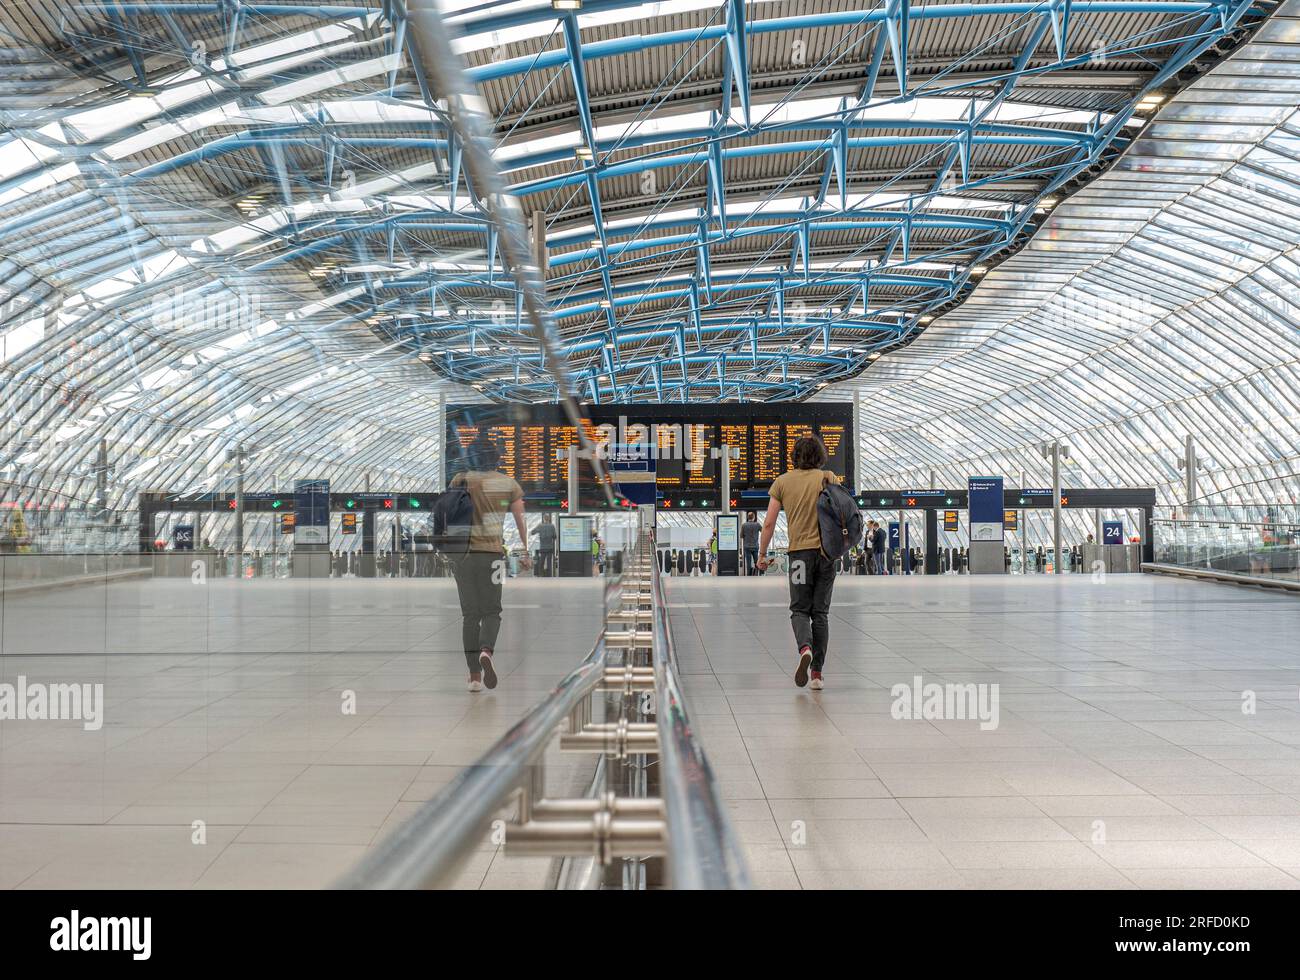 LA STAZIONE DI WATERLOO è un viaggiatore solitario in una nuova e tranquilla architettura che circonda le piattaforme 20-24 nell'ex terminal Eurostar. Stazione Waterloo di Londra Foto Stock